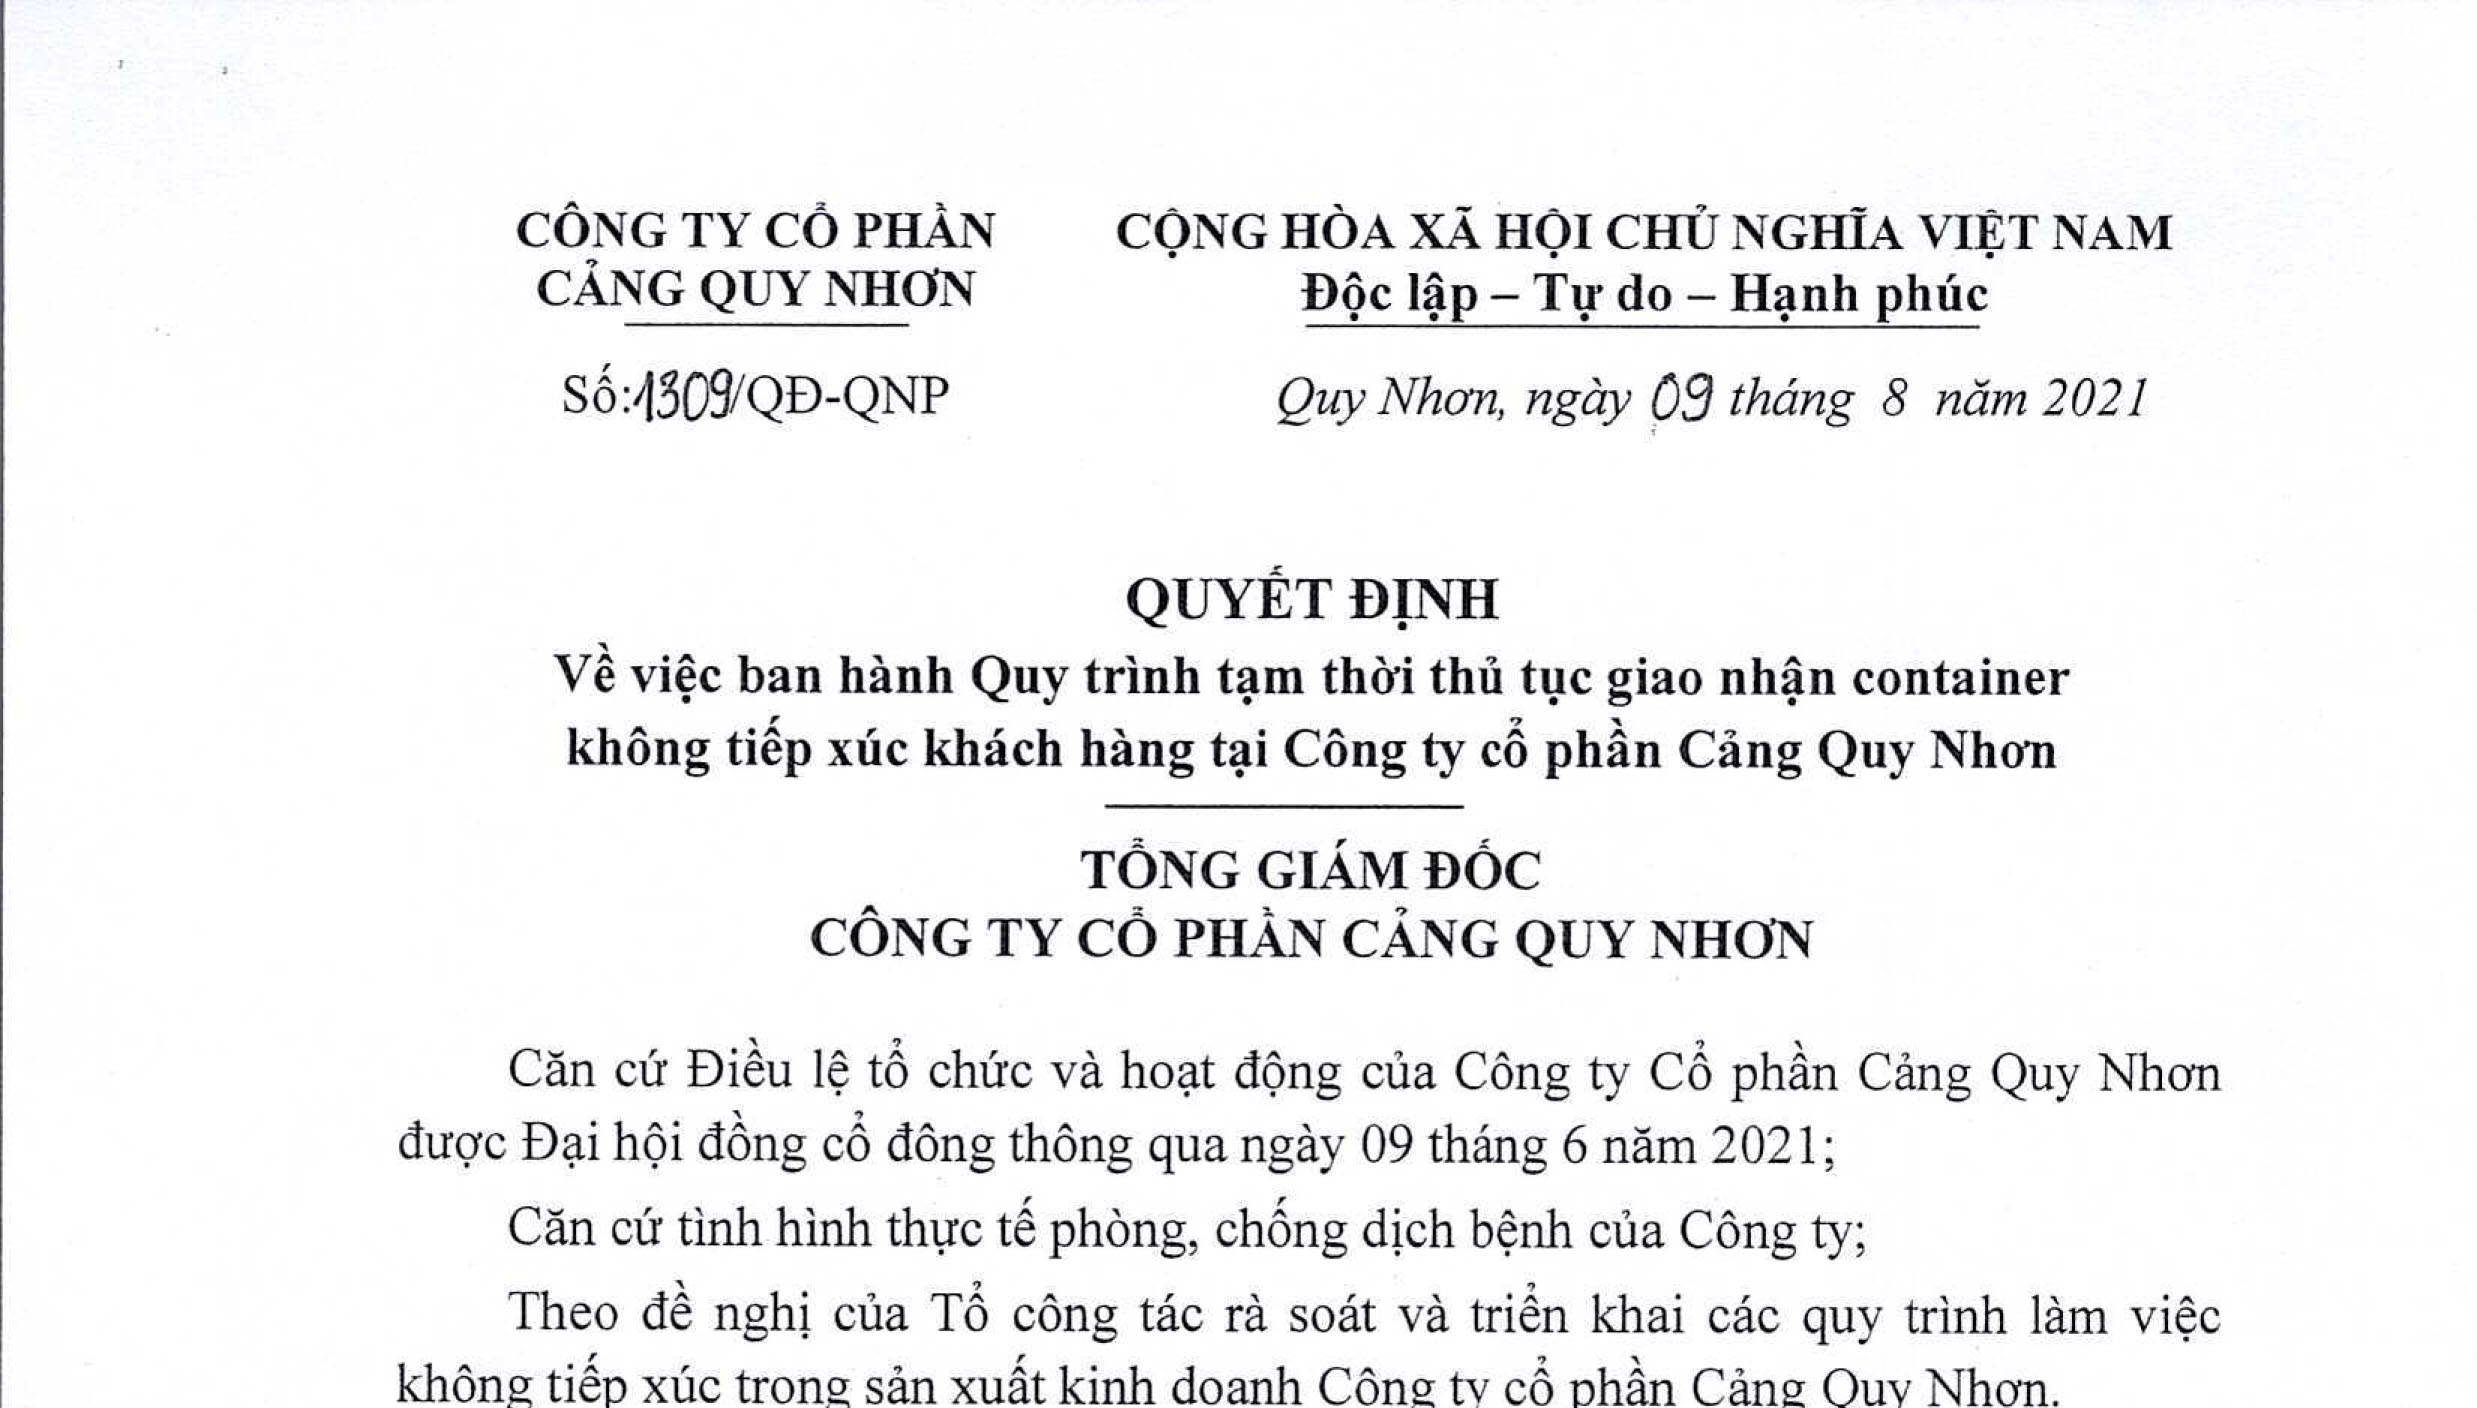 Quyết định số 1309/QĐ-QNP ngày 09/8/2021 của CTPT Cảng Quy Nhơn về việc ban hành quy trình tạm thời thủ tục giao nhận container không tiếp xúc khách hàng tại Công ty CP Cảng Quy Nhơn